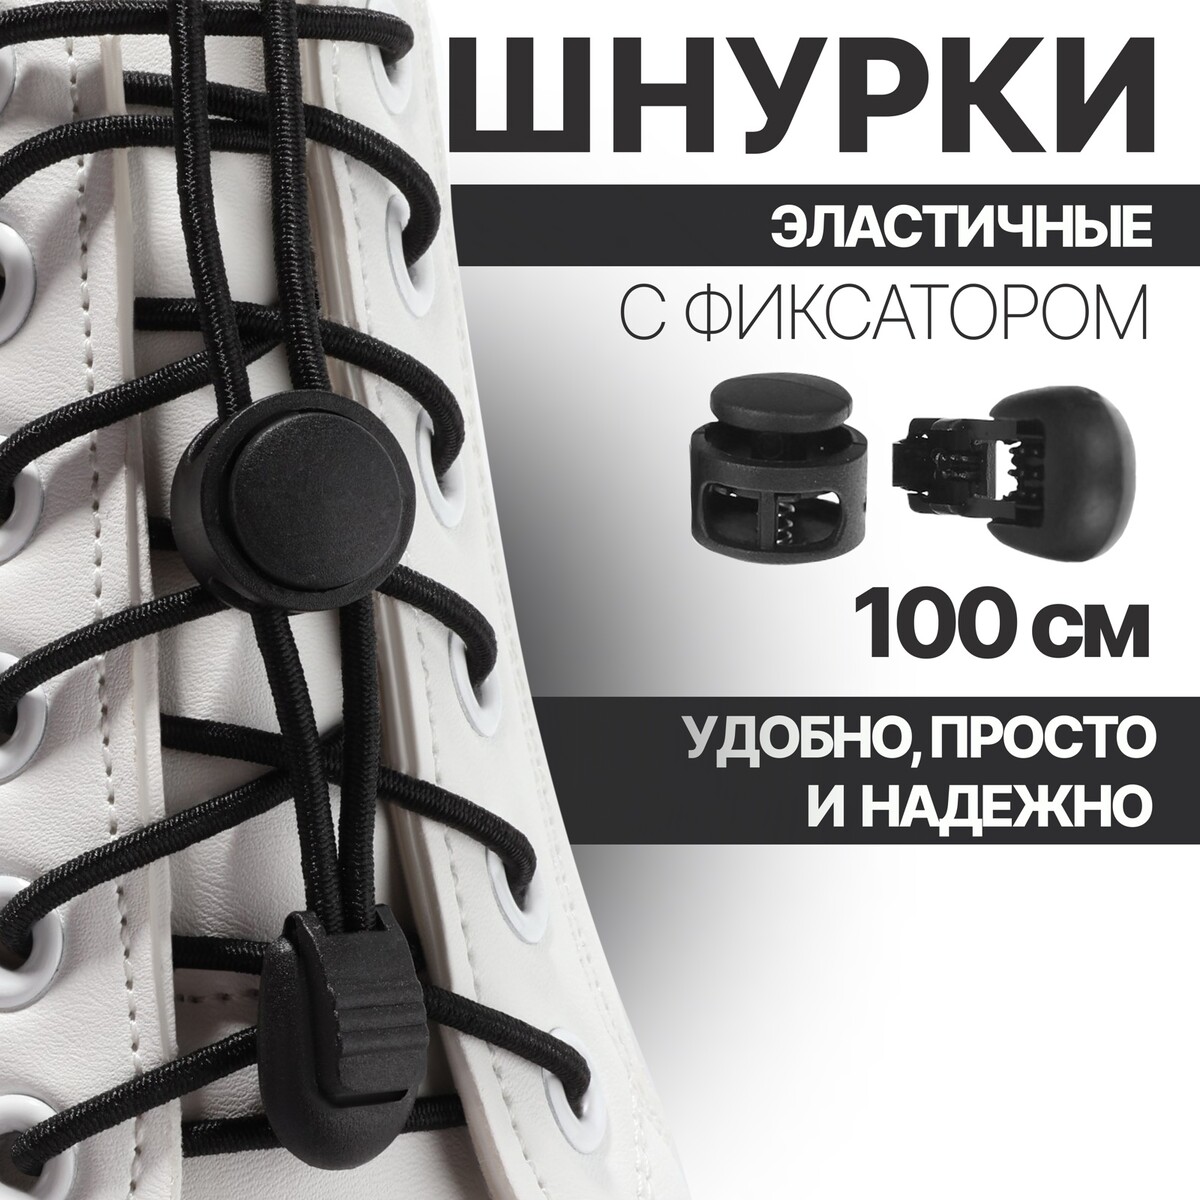 Шнурки для обуви, пара, круглые, с фиксатором, эластичные, d = 3 мм, 100 см, цвет черный рулетка 5 м обрезиненный пластик 18 мм с фиксатором spe13806 76 5